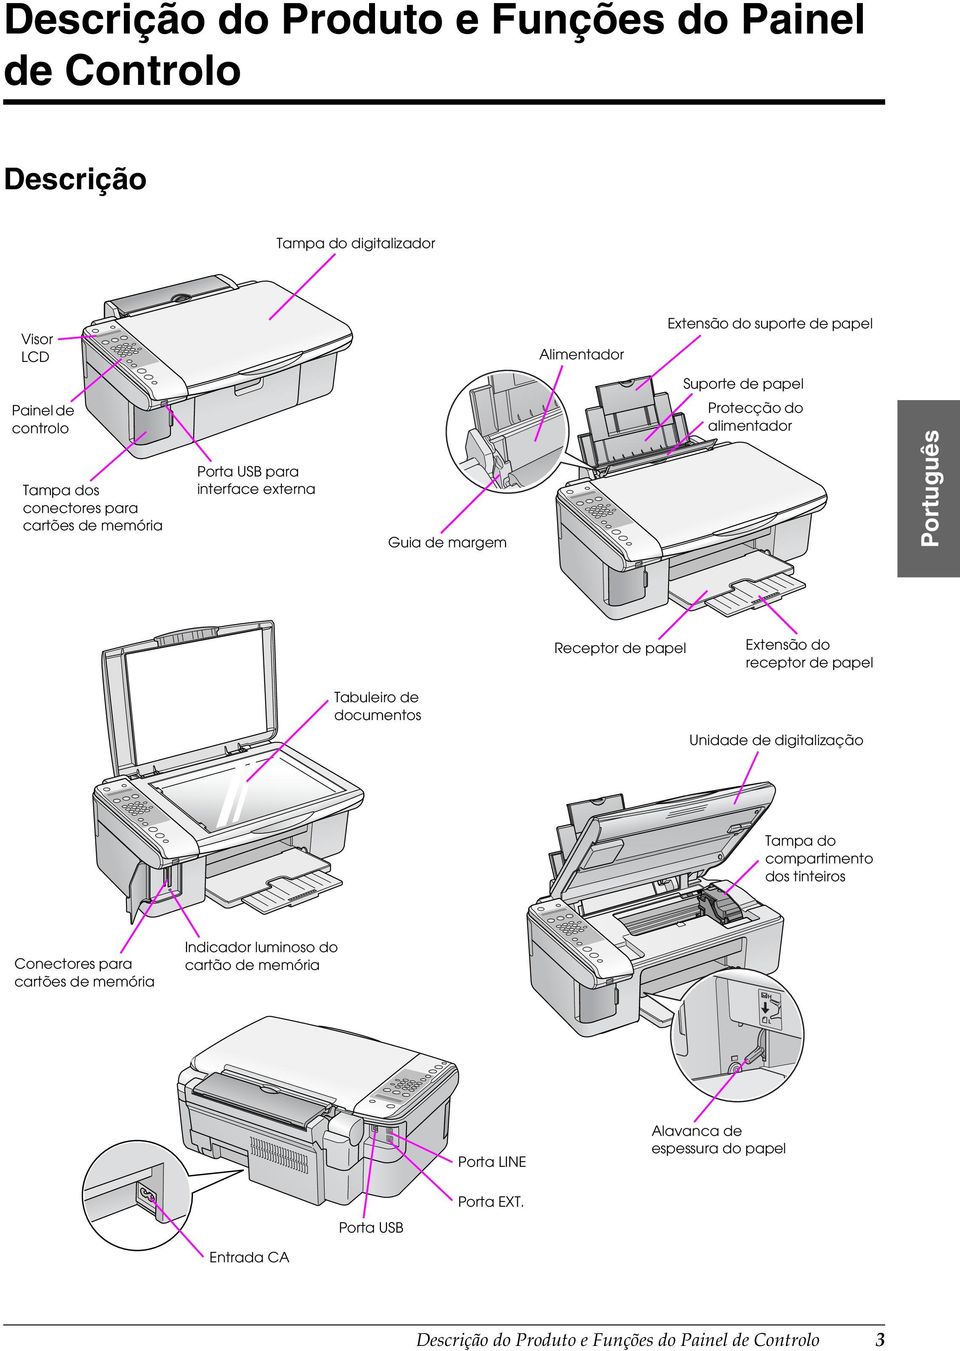 papel Extensão do receptor de papel Tabuleiro de documentos Unidade de digitalização Tampa do compartimento dos tinteiros Conectores para cartões de memória